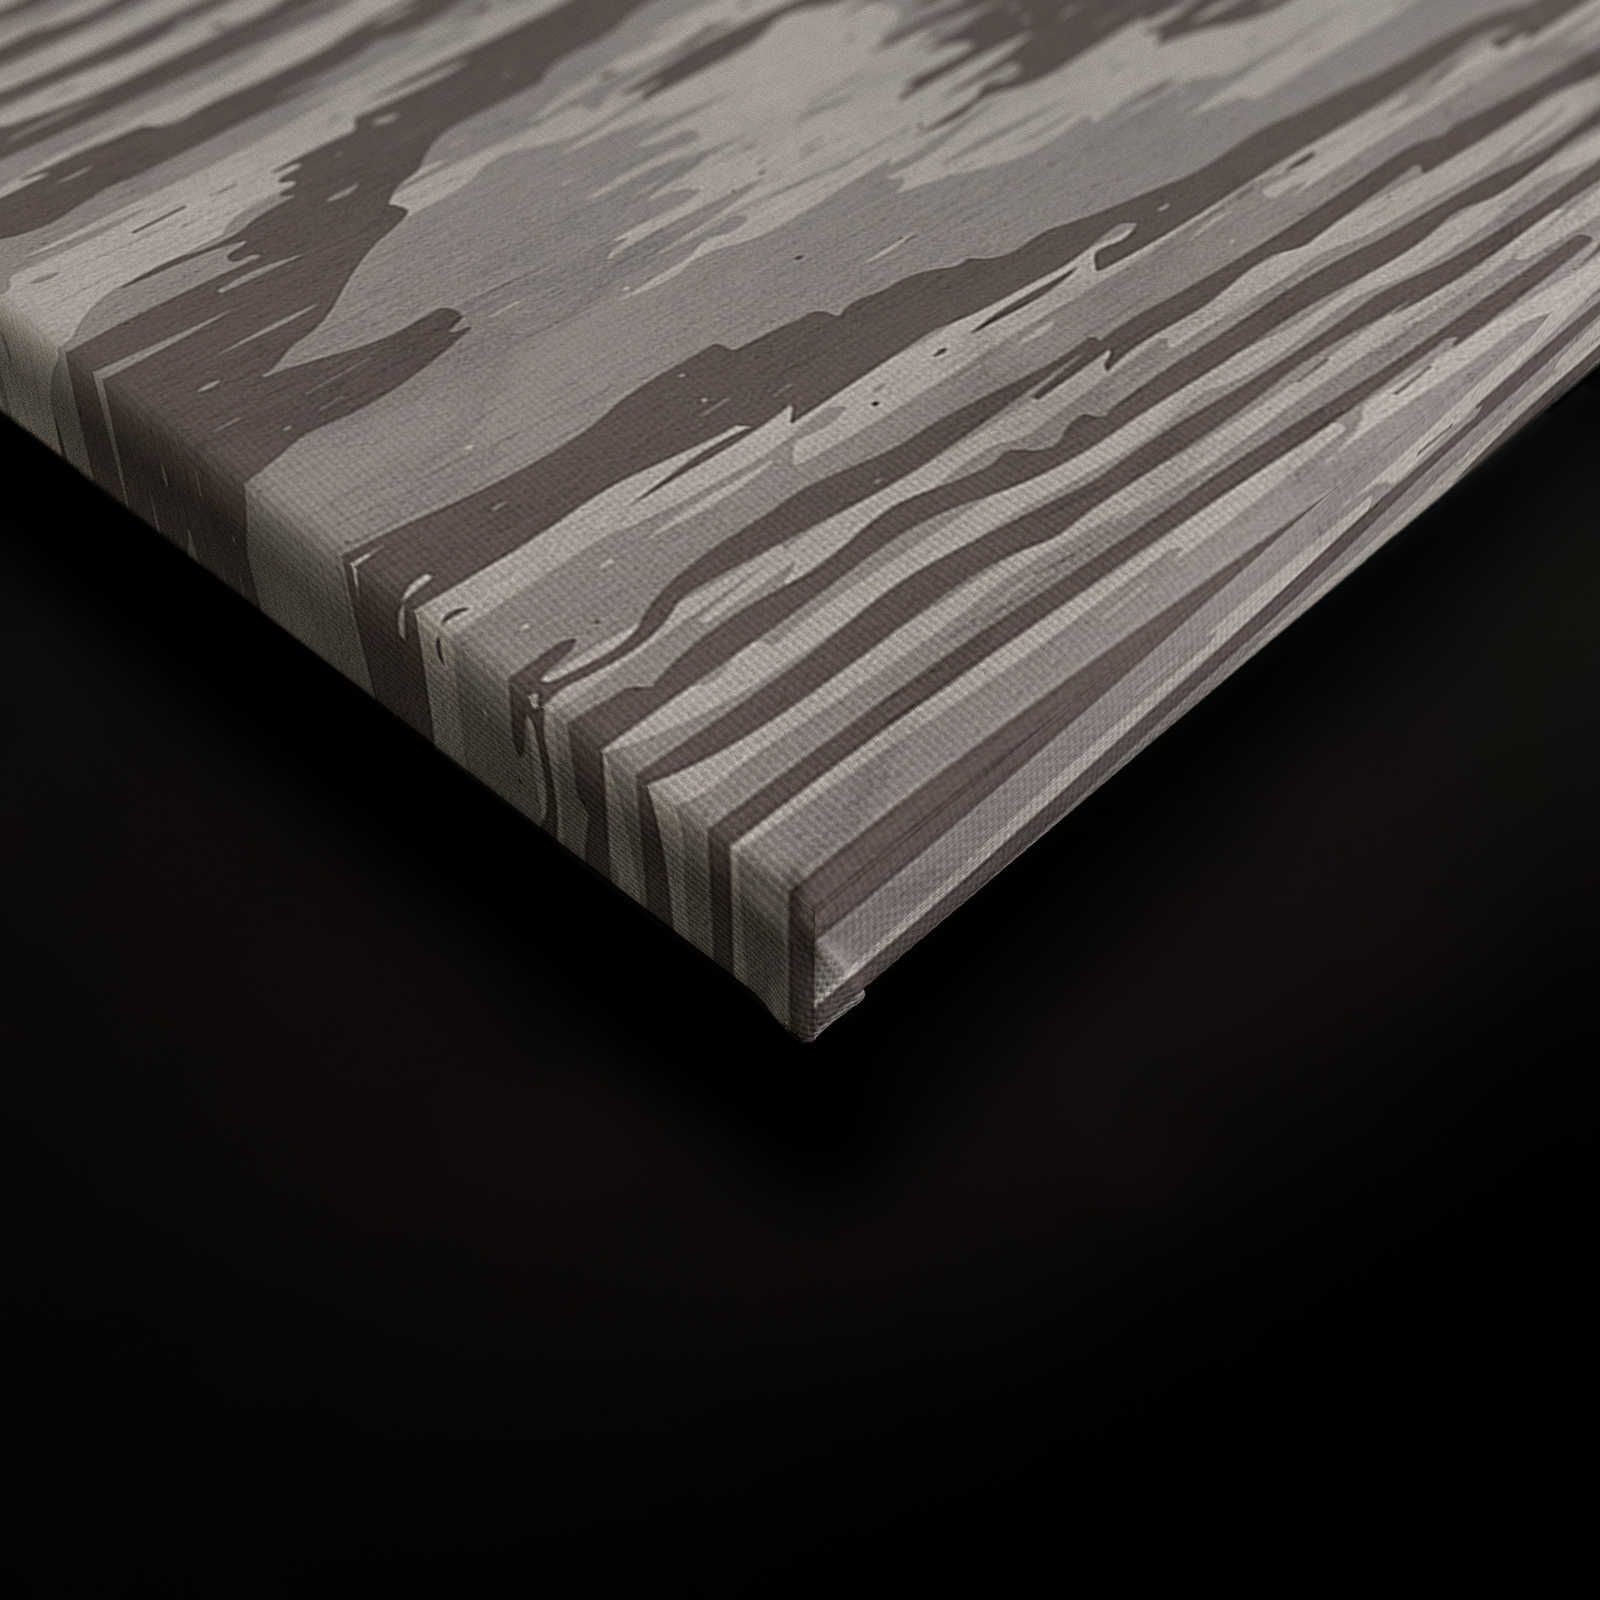             Bounty 4 - Lienzo imitación madera Grano XXL en marrón y gris - 0,90 m x 0,60 m
        